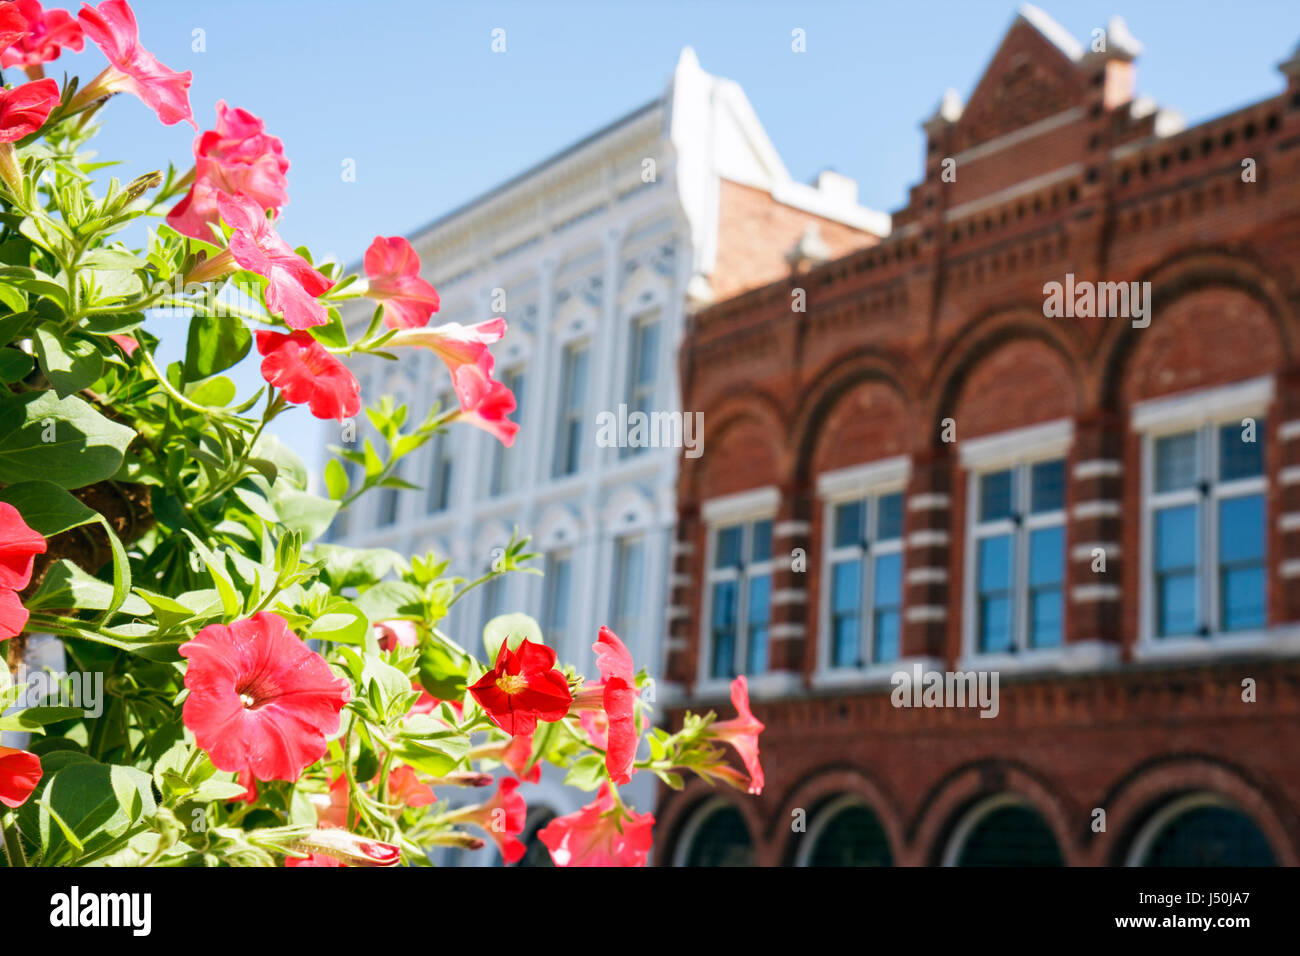 Alabama, Montgomery County, Montgomery, Commerce Street, edifici storici, skyline della città, rosso, fiore, fiori, petali, AL080517003 Foto Stock